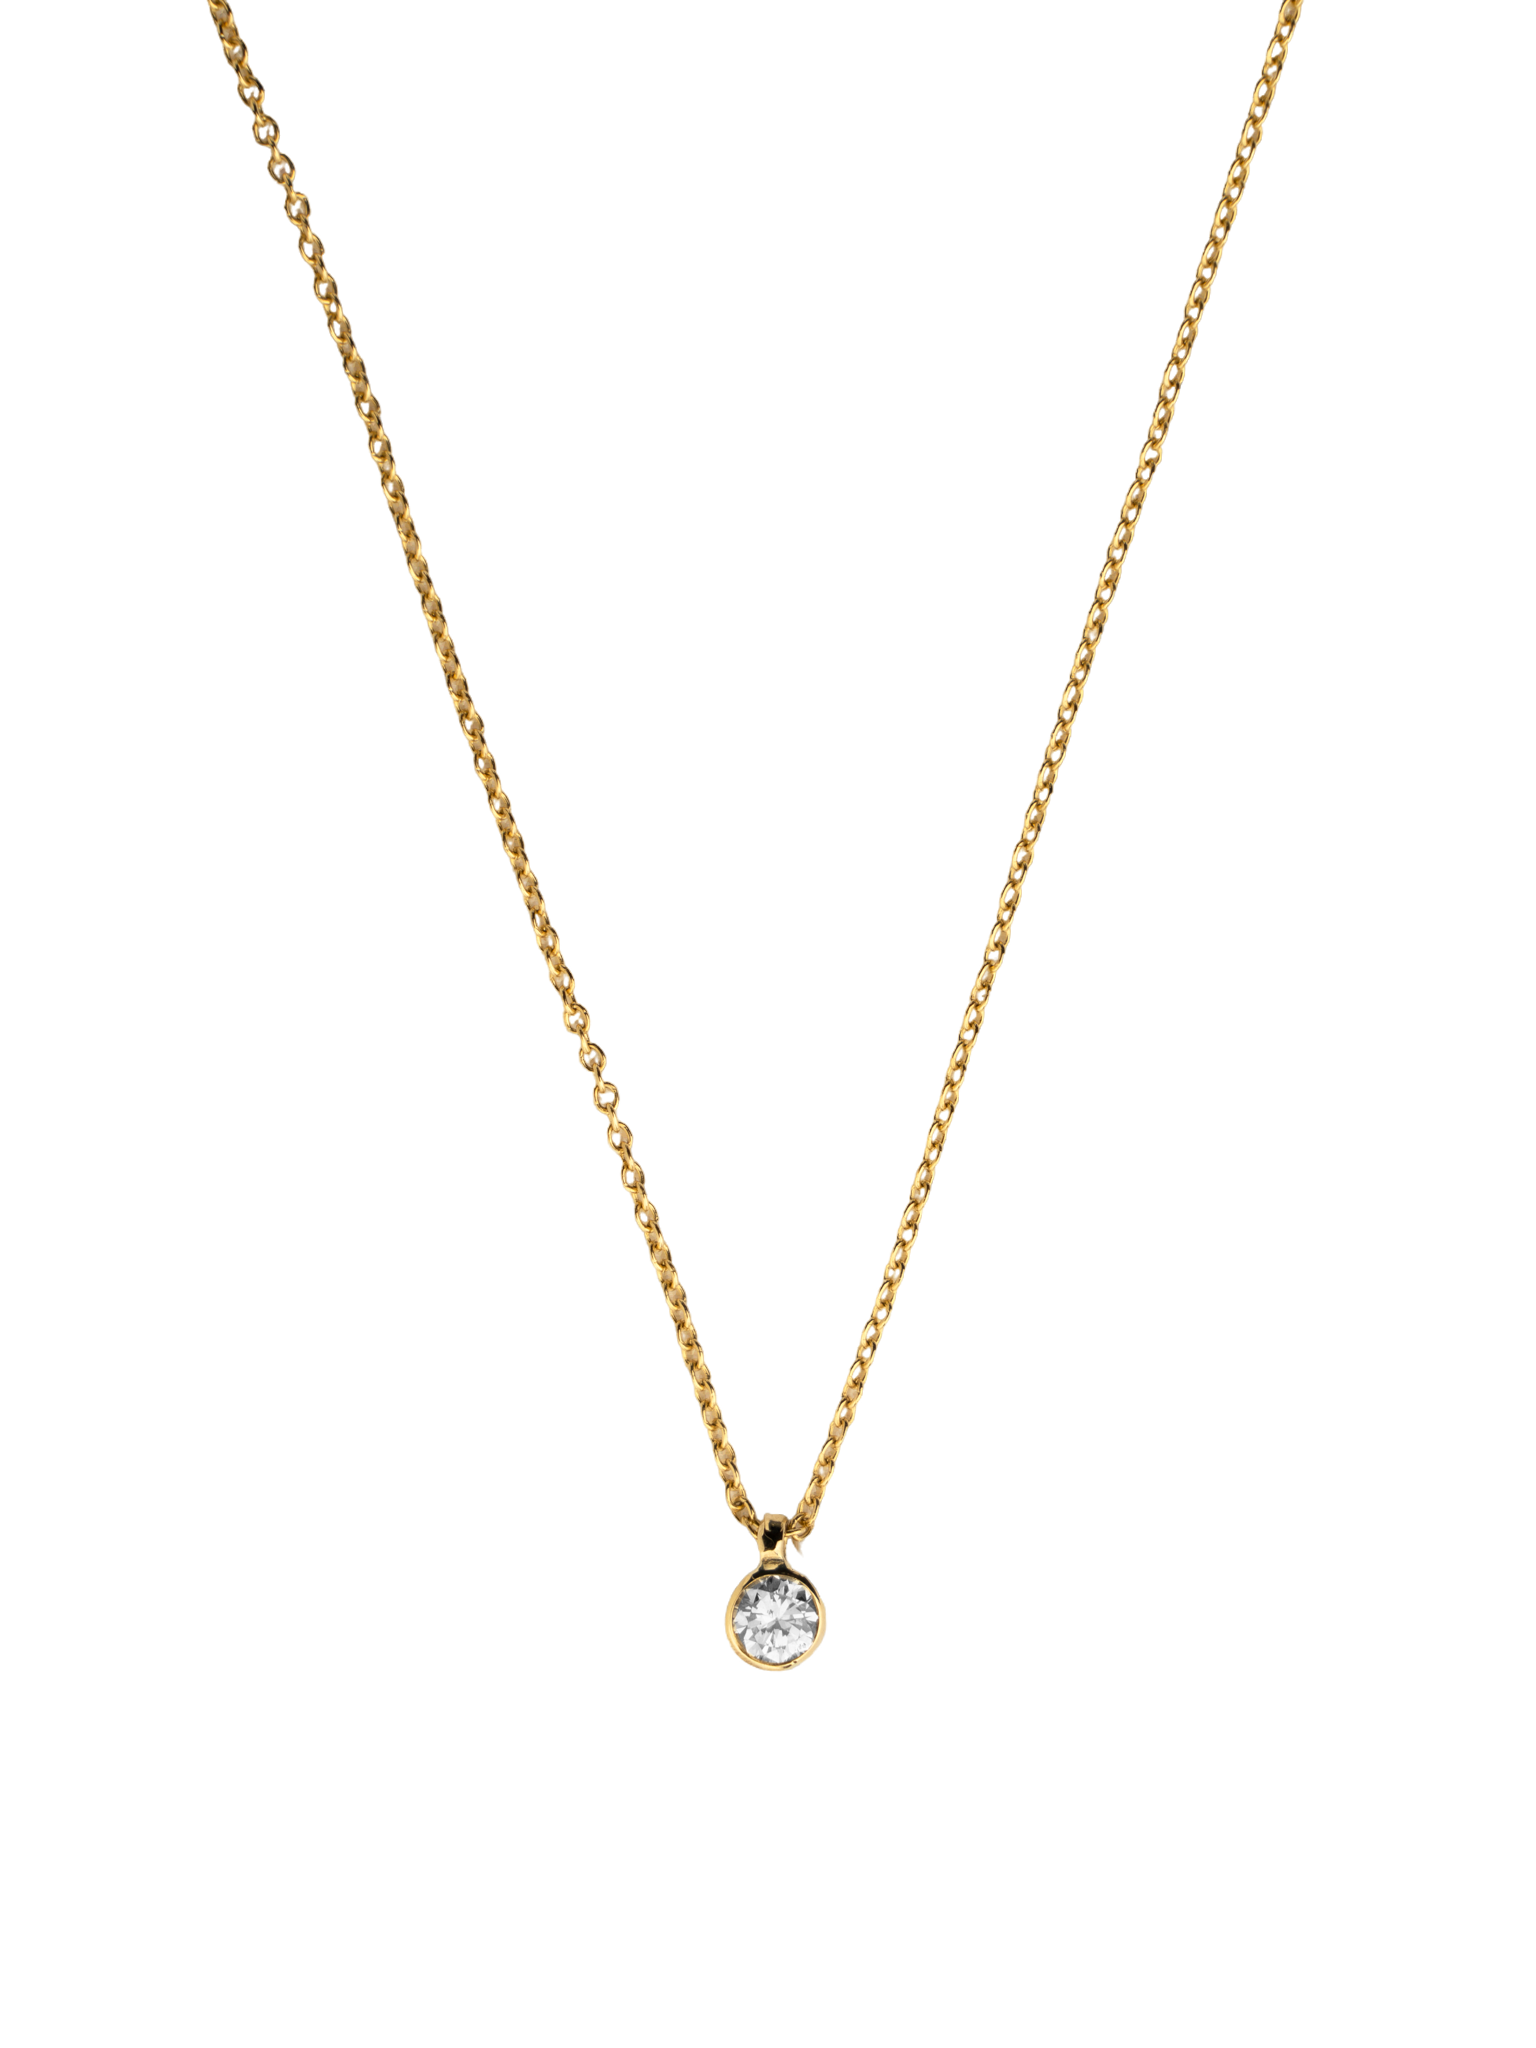 Diamond necklace by Fabienne Kriwin Jewels | Finematter